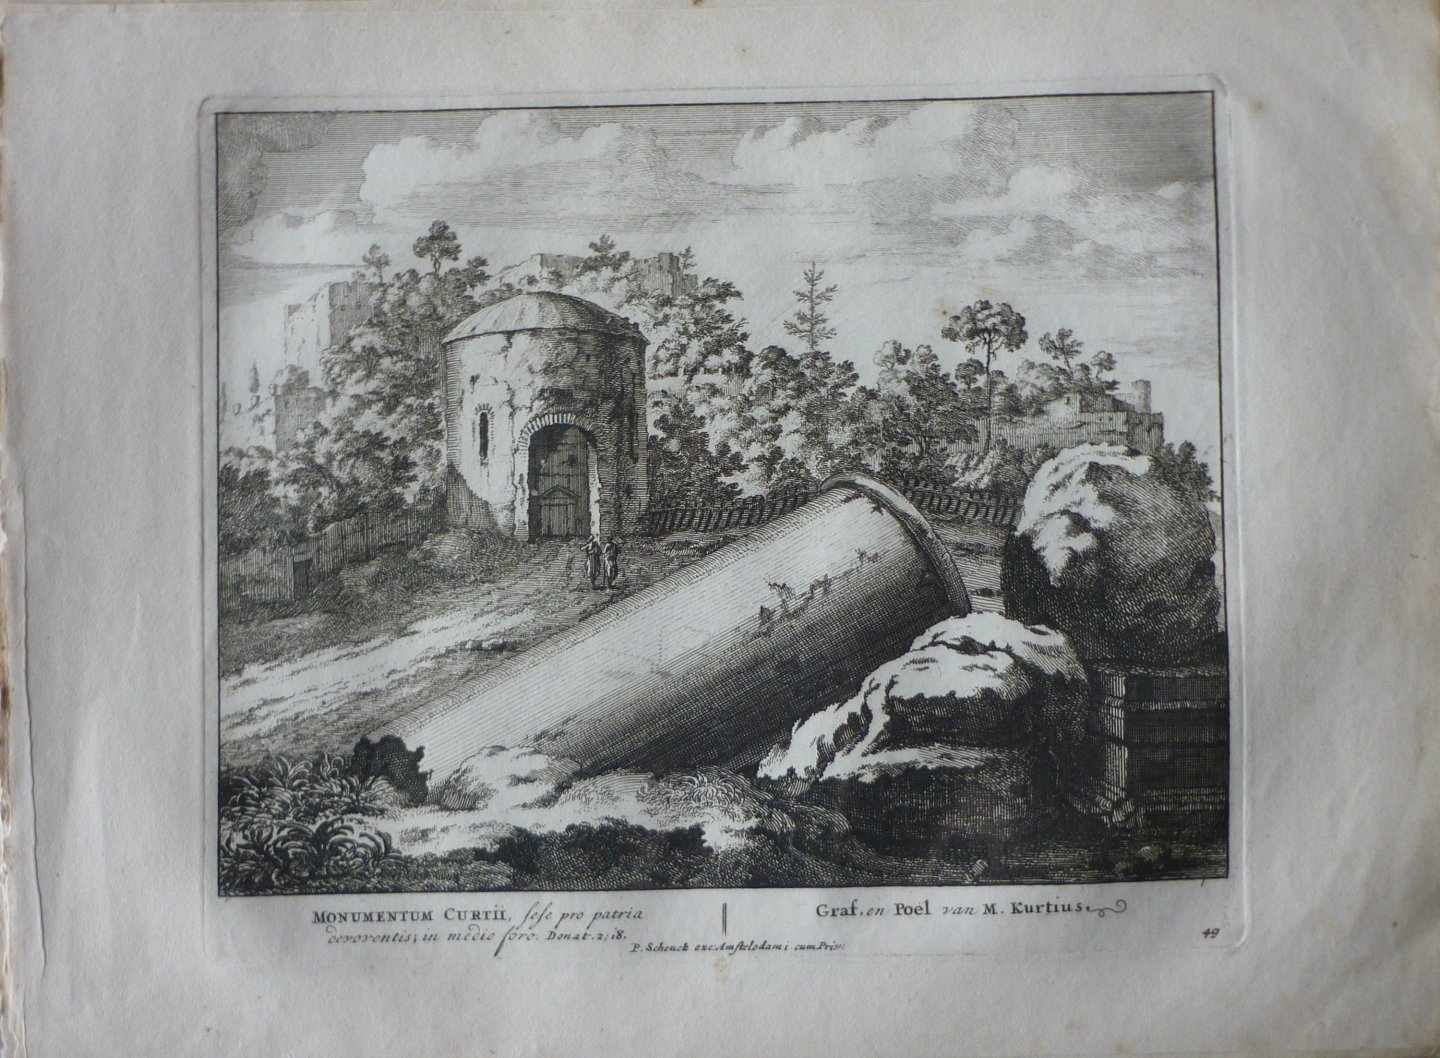 Schenck, Petrus [Pieter Schenk] - Graf en Poel van M. Kurtius 49. Originele kopergravure.